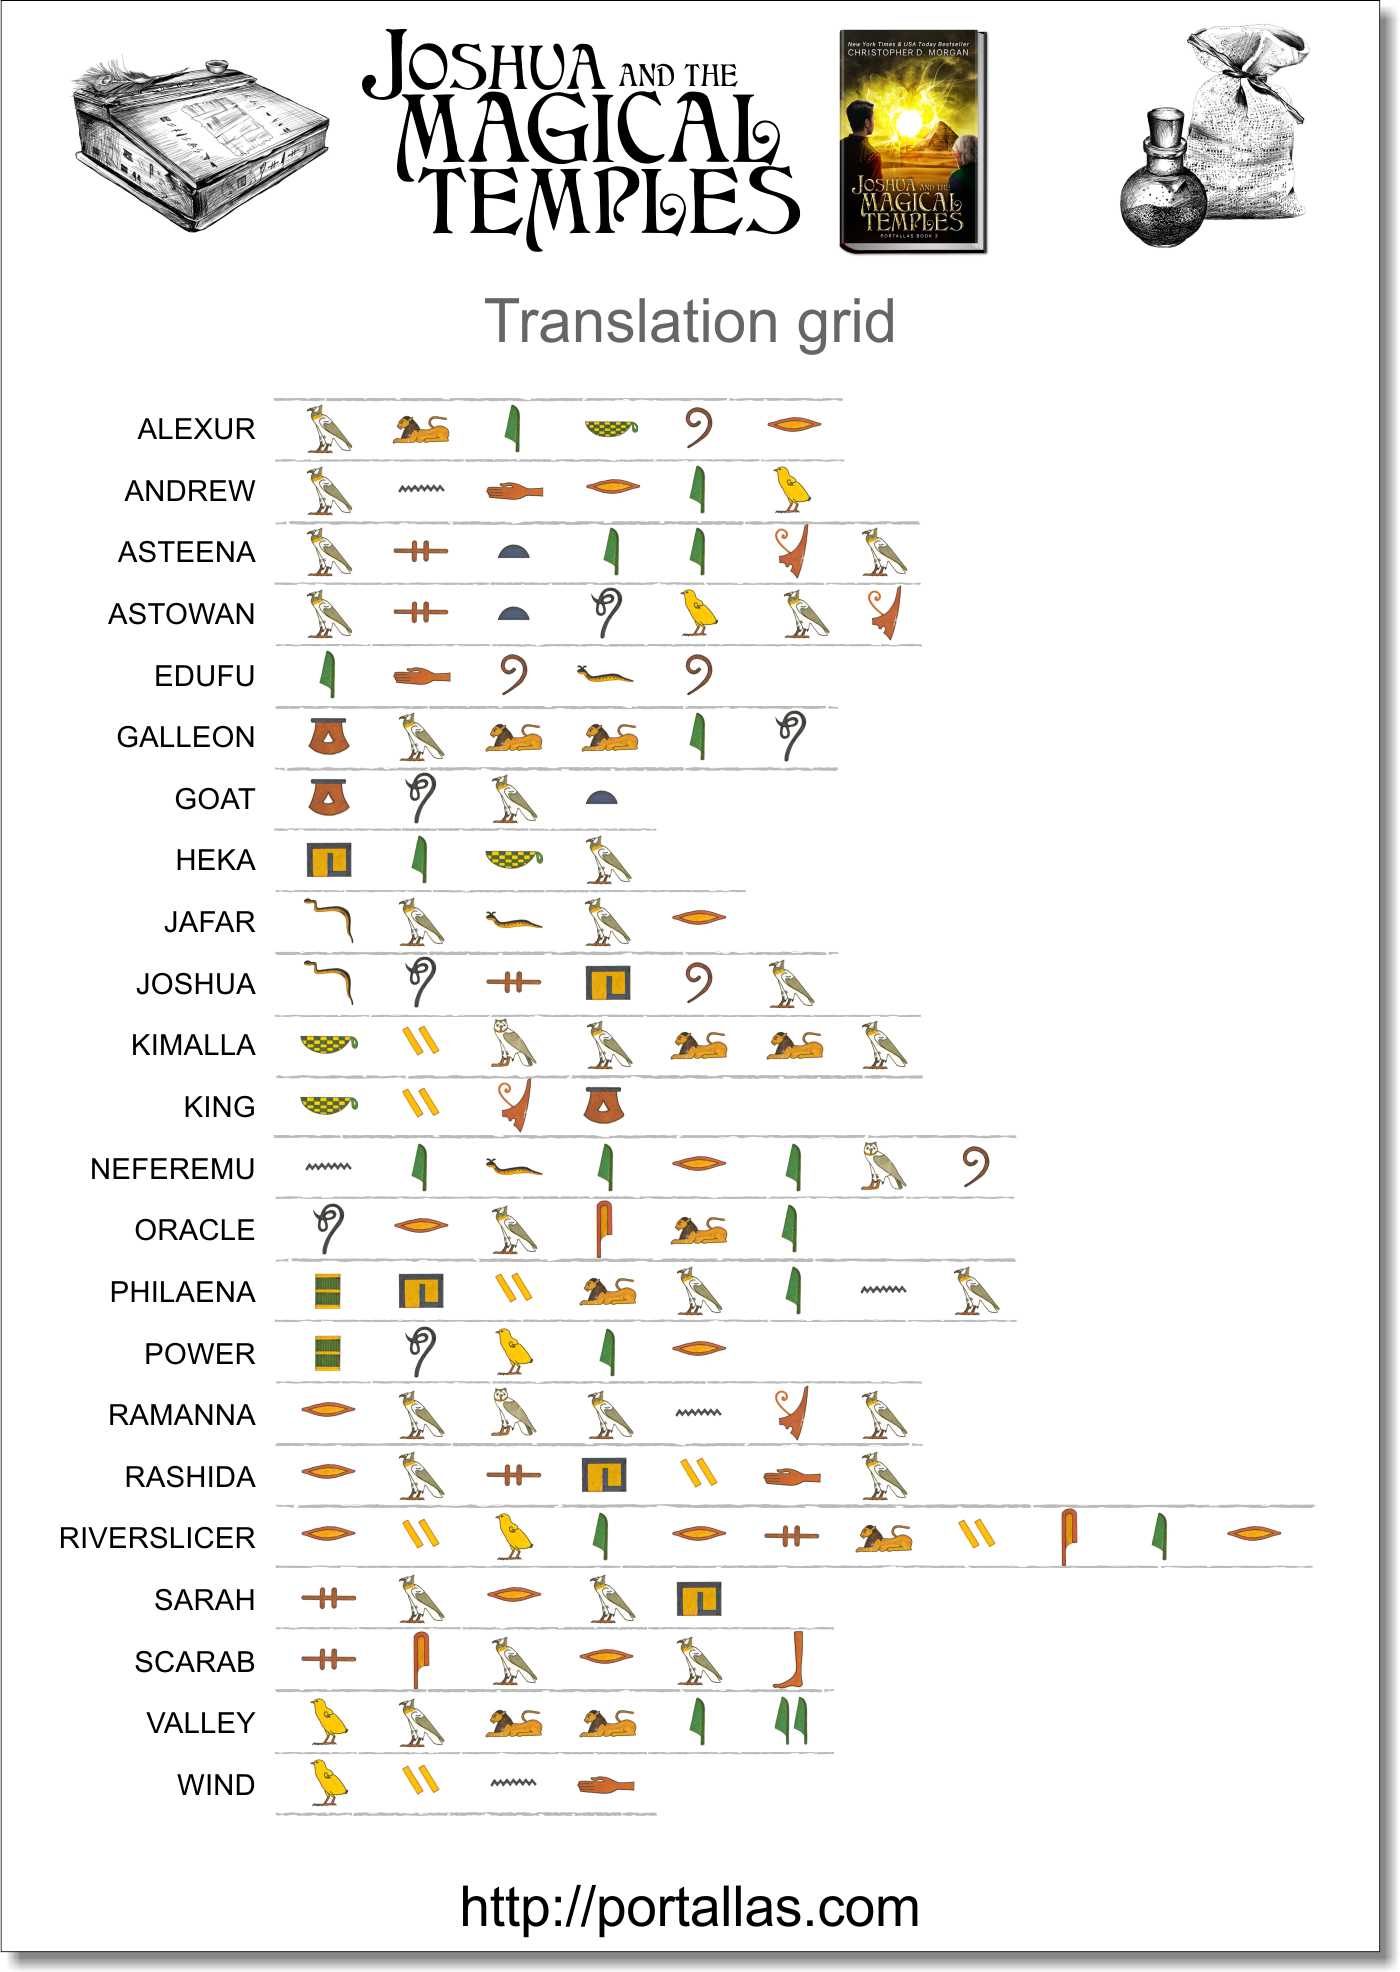 Edufu hieroglyph anagram translation grid